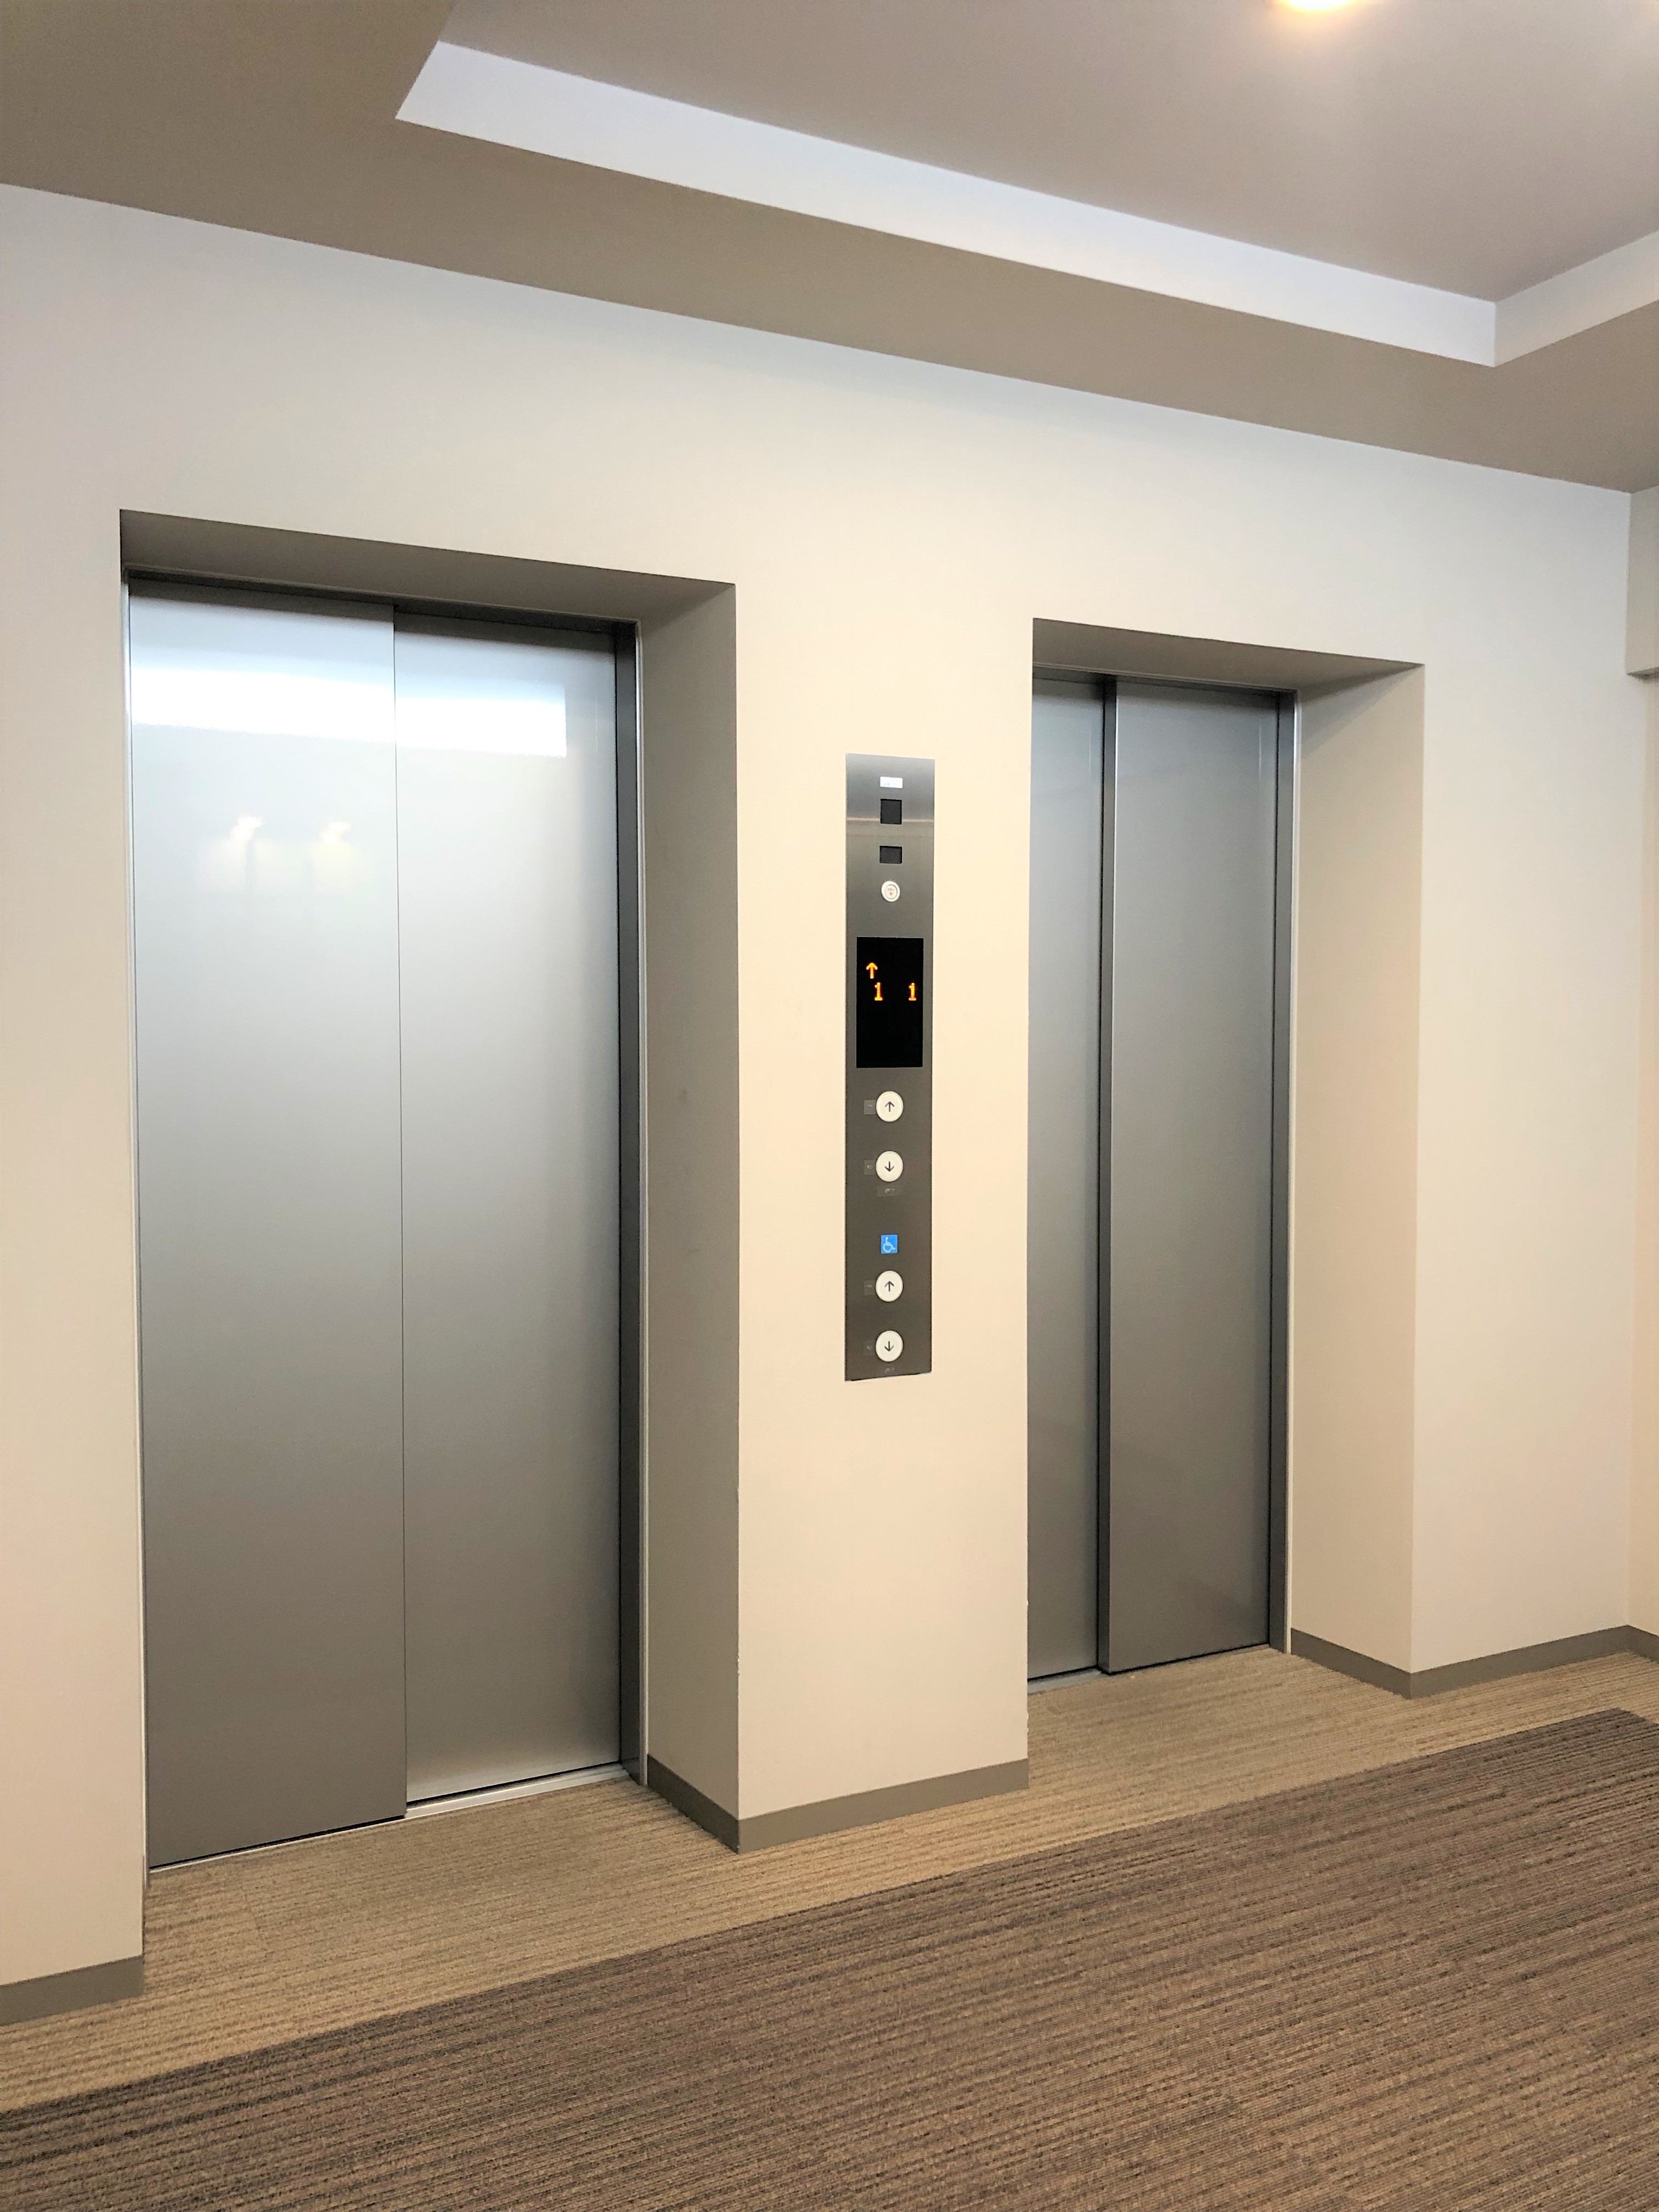 エレベーターも2基あるので、混雑する時間帯も安心です。(2021年11月)